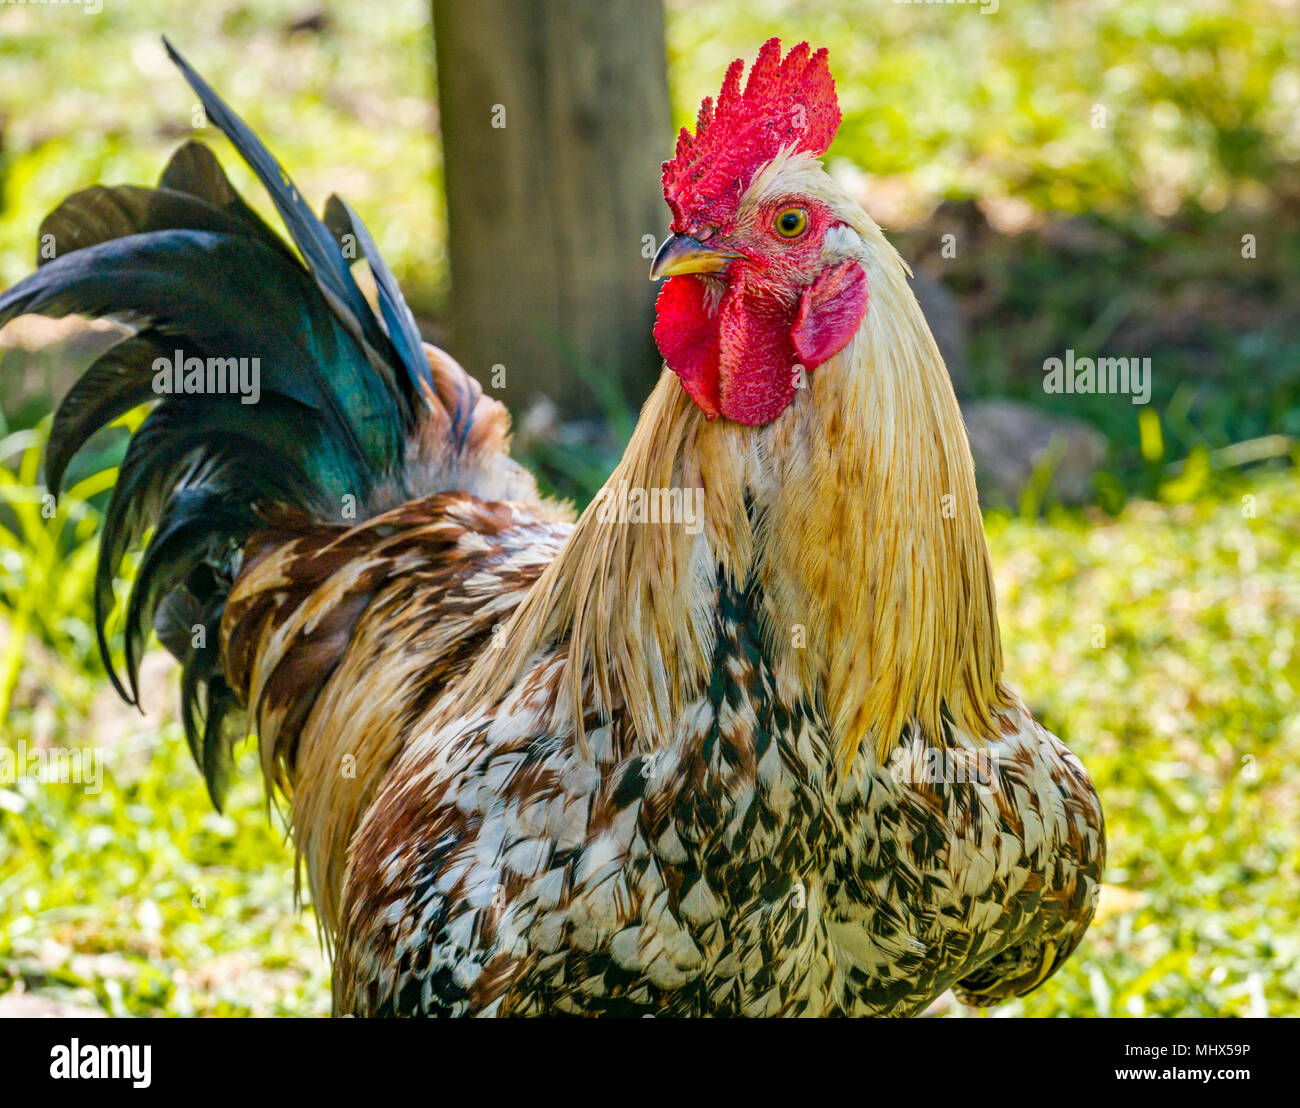 Inländisches Bauernhofhuhn. Huhn, Hahn, Hahn oder Hahn mit bunten Federn  Stockfotografie - Alamy